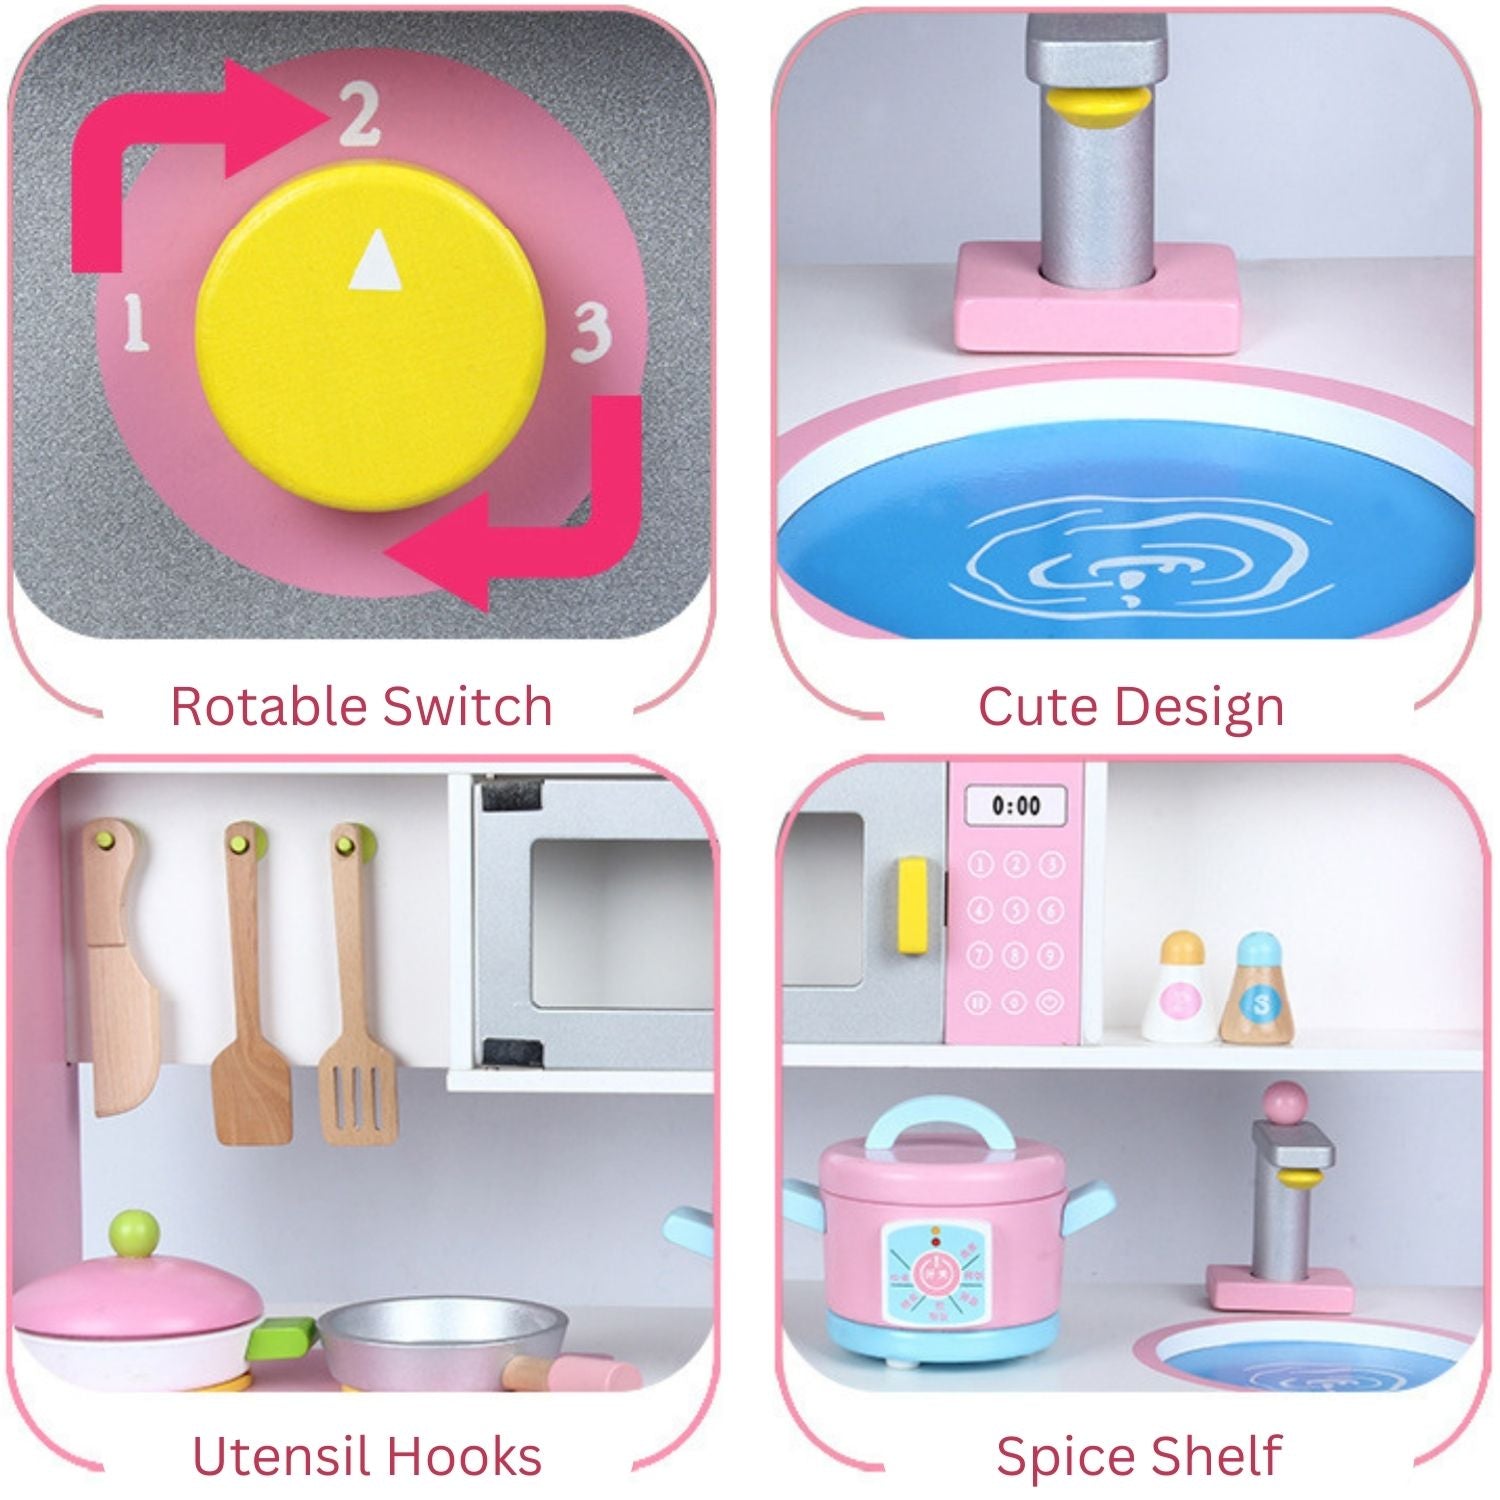 EKKIO Wooden Kitchen Playset for Kids (Japanese Style Kitchen Set, Violet)